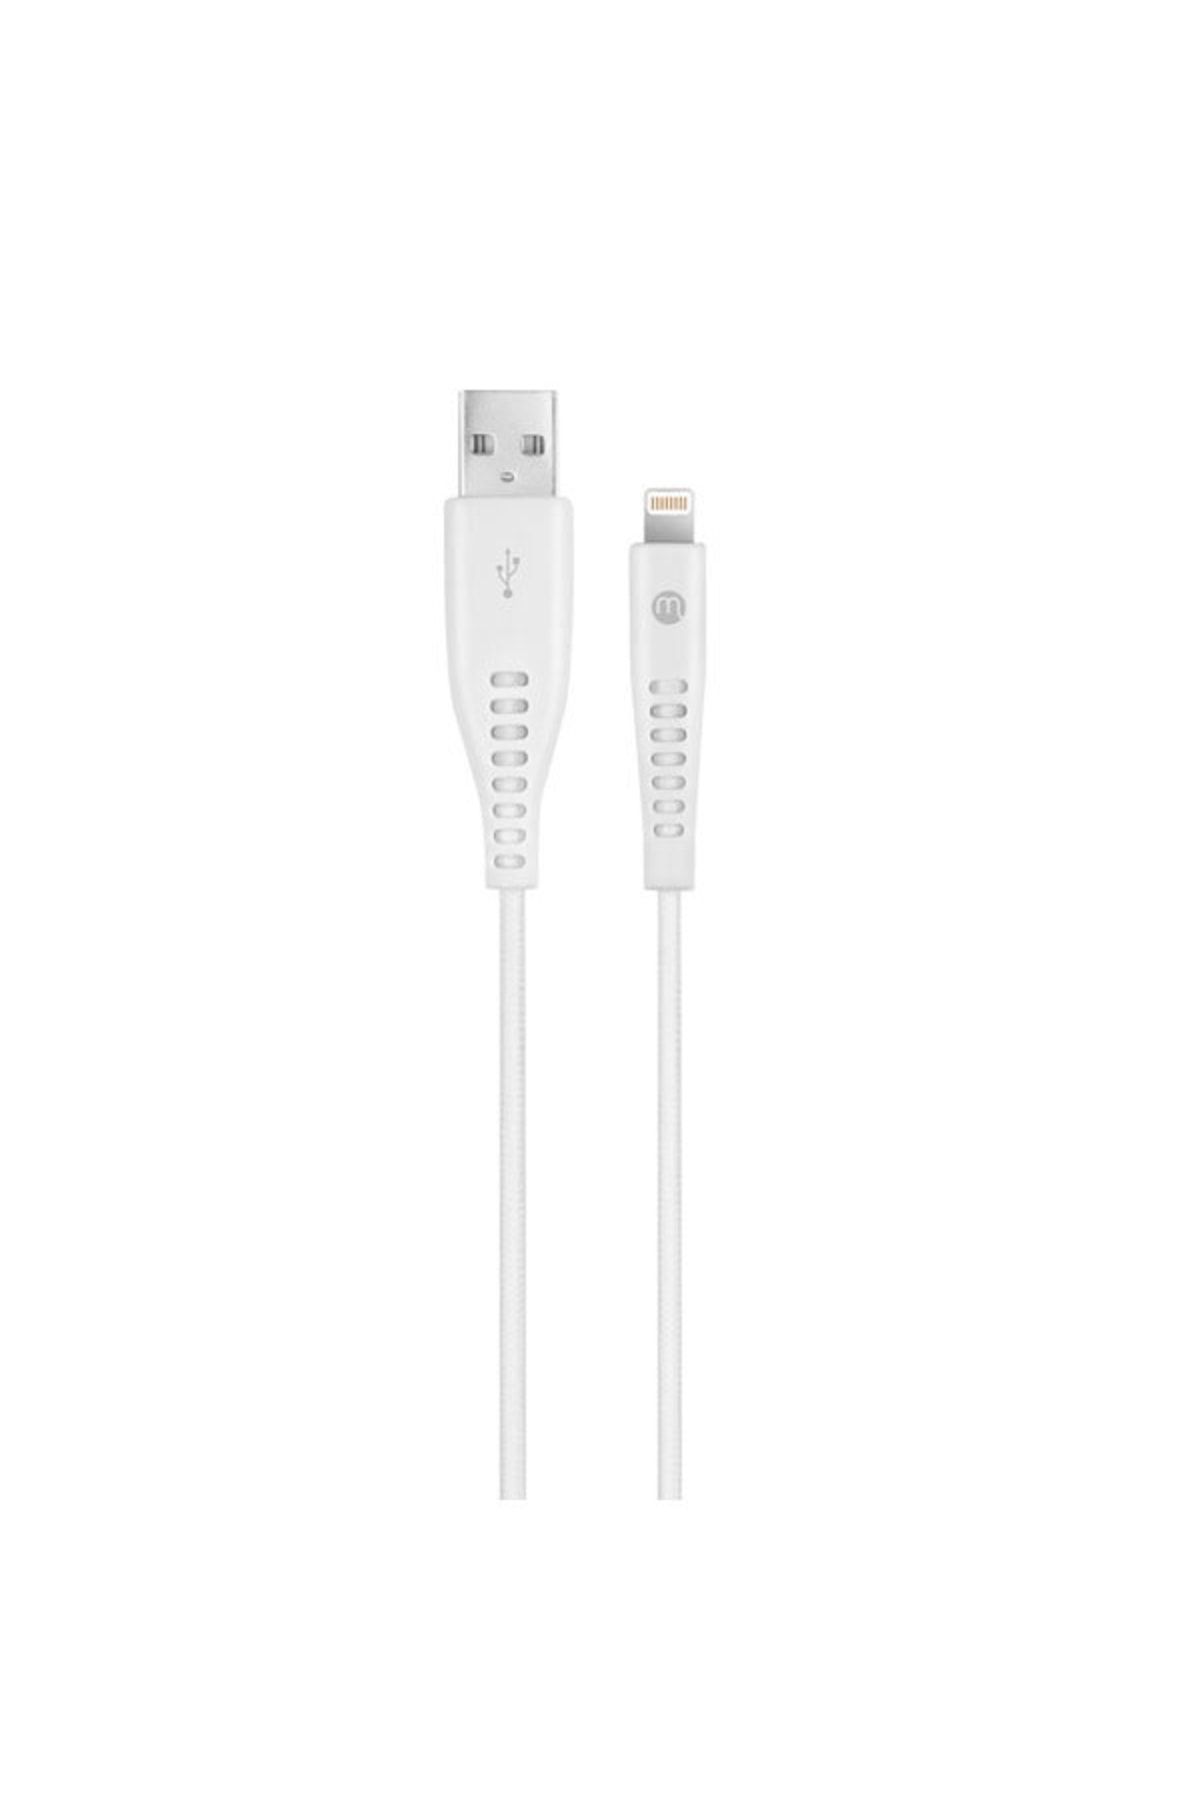 Mojue Ekstra Dayanıklı ve Uzun 300cm USB-A - iPhone Lightning 2A Şarj Kablosu